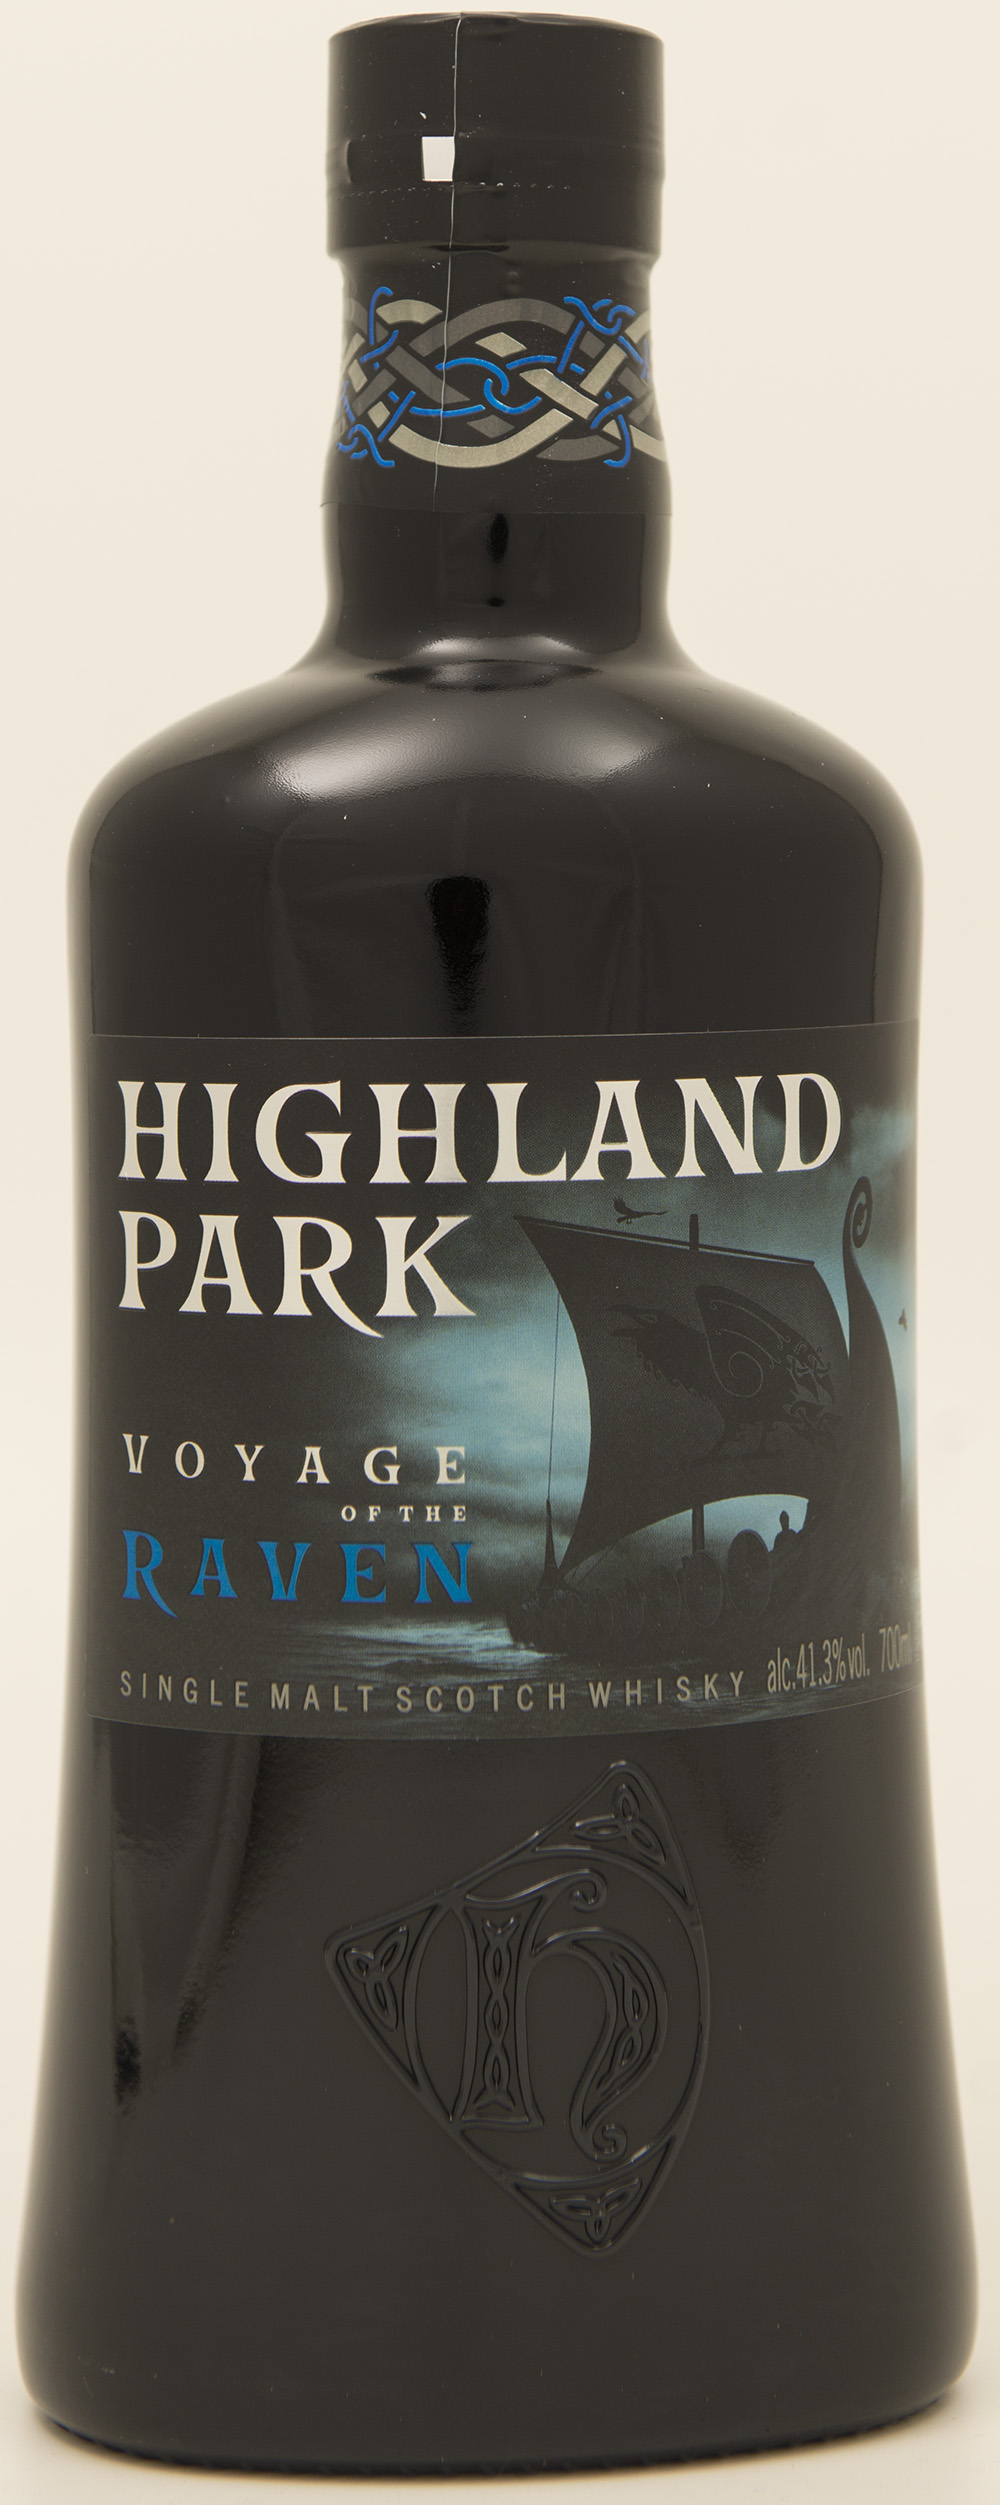 Billede: DSC_3710 - Highland Park - Vouage of the Raven (bottle front).jpg